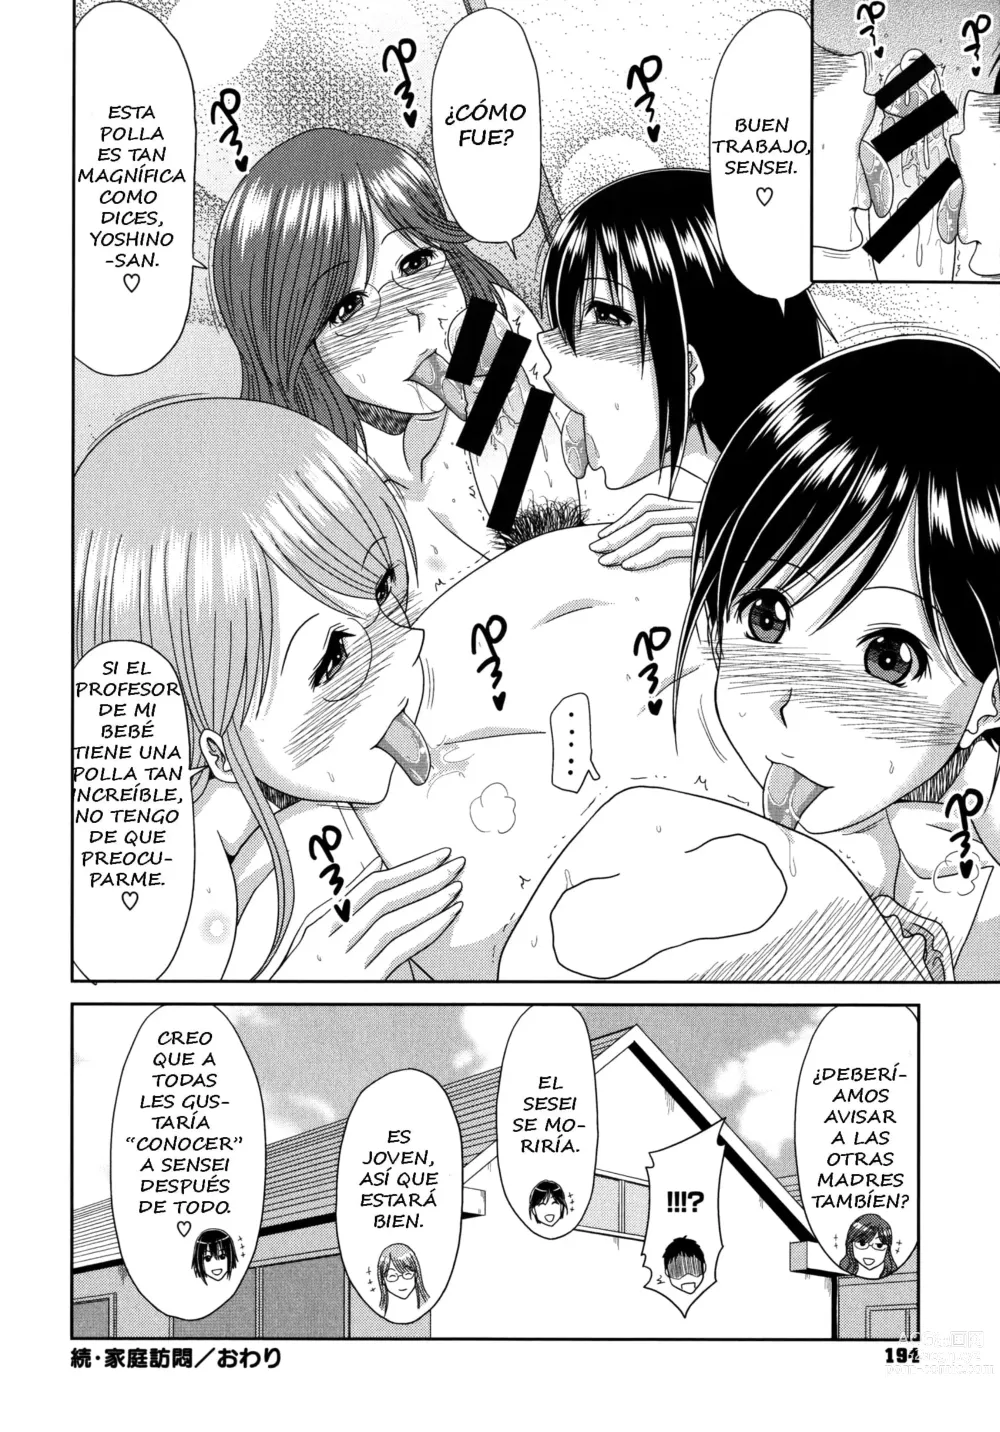 Page 90 of manga Chounyuusai Ch. 5-8, 10